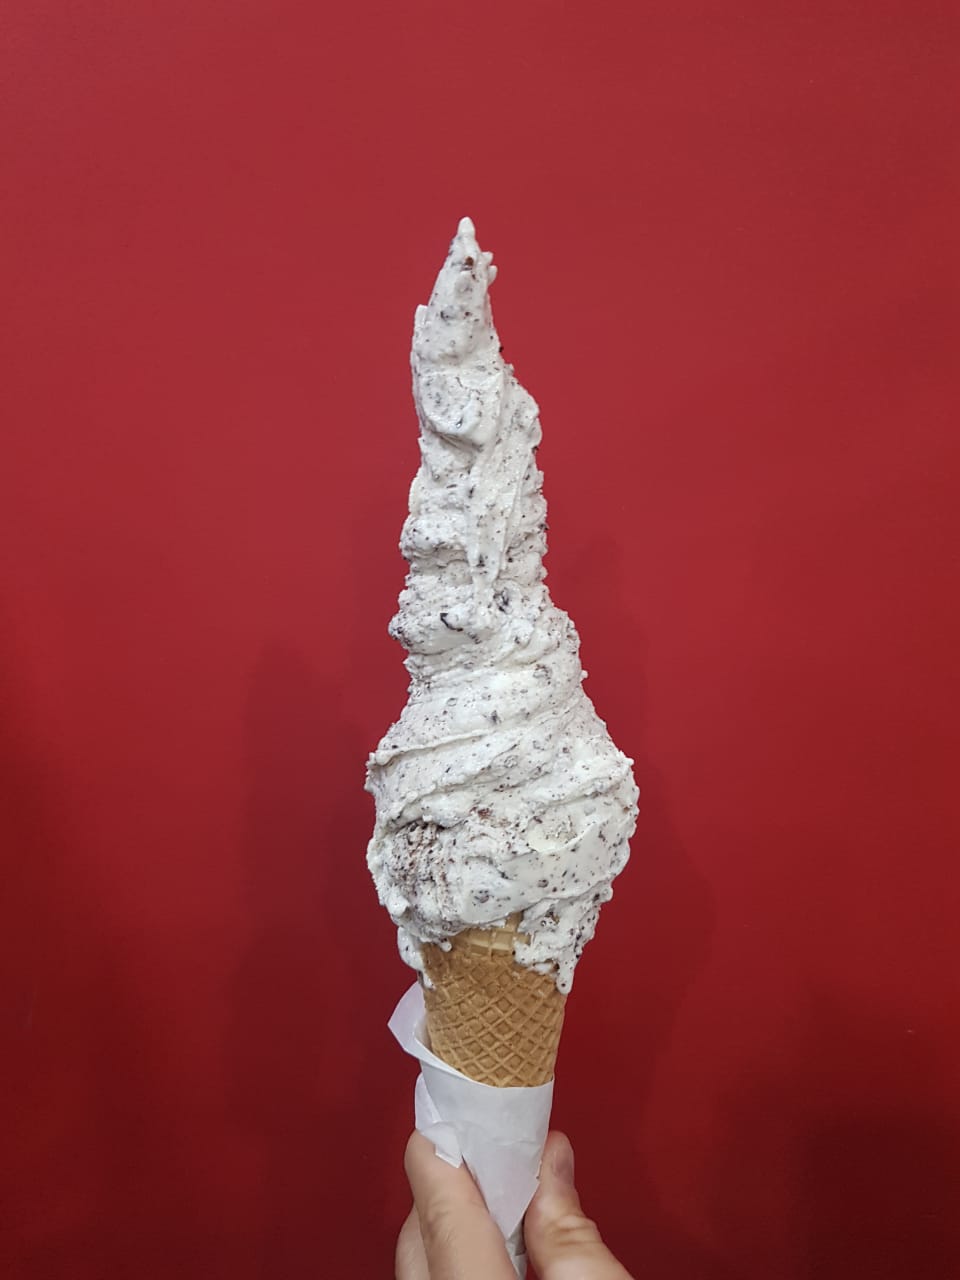 Cucurucho de helado sabor Granizado